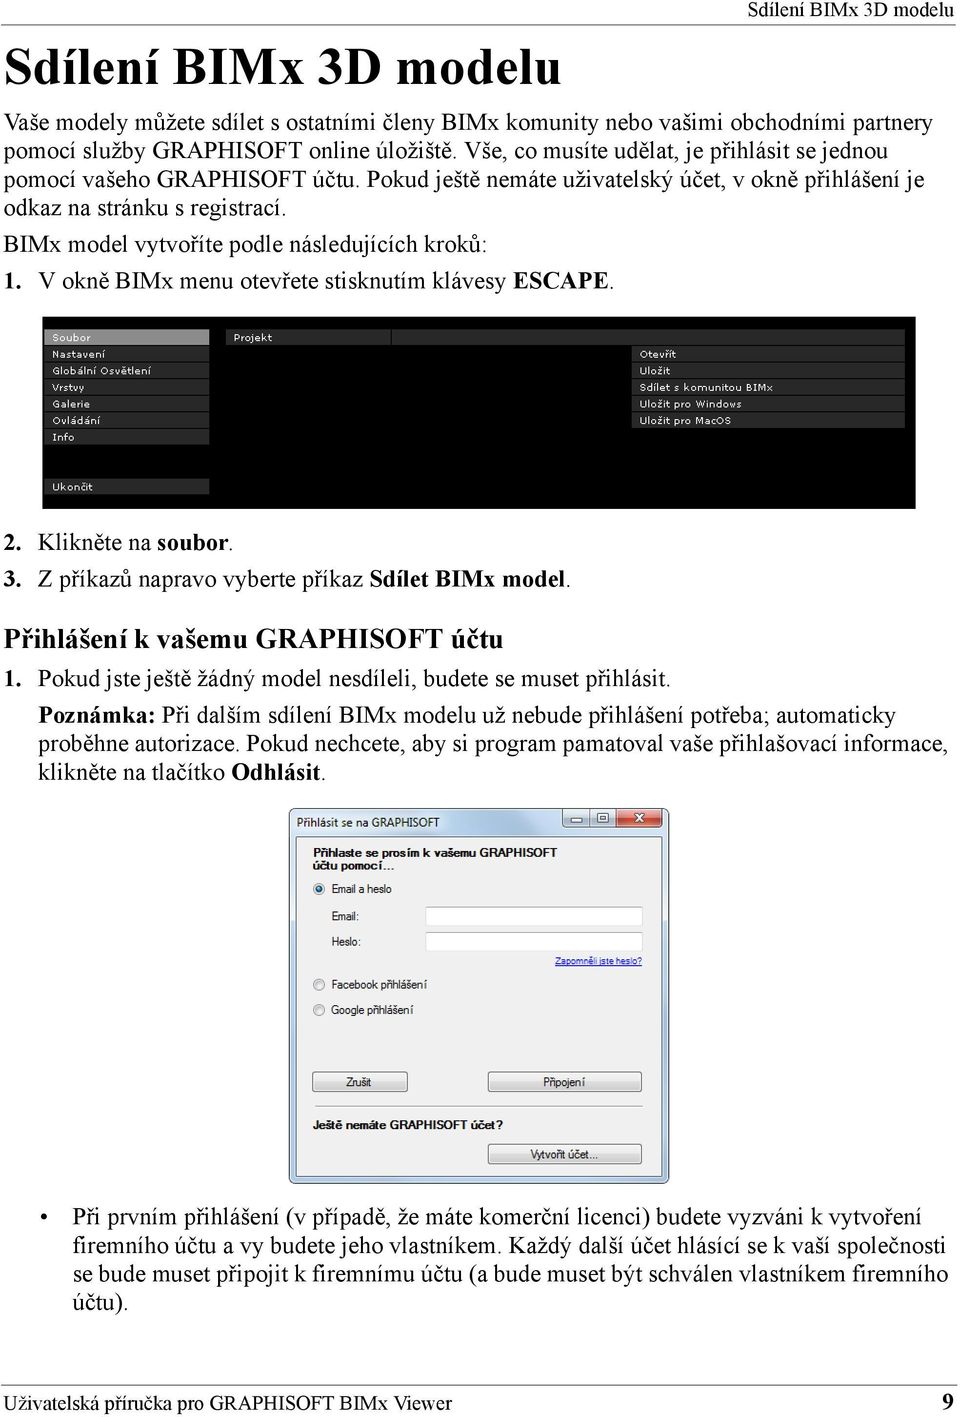 BIMx model vytvoříte podle následujících kroků: 1. V okně BIMx menu otevřete stisknutím klávesy ESCAPE. 2. Klikněte na soubor. 3. Z příkazů napravo vyberte příkaz Sdílet BIMx model.